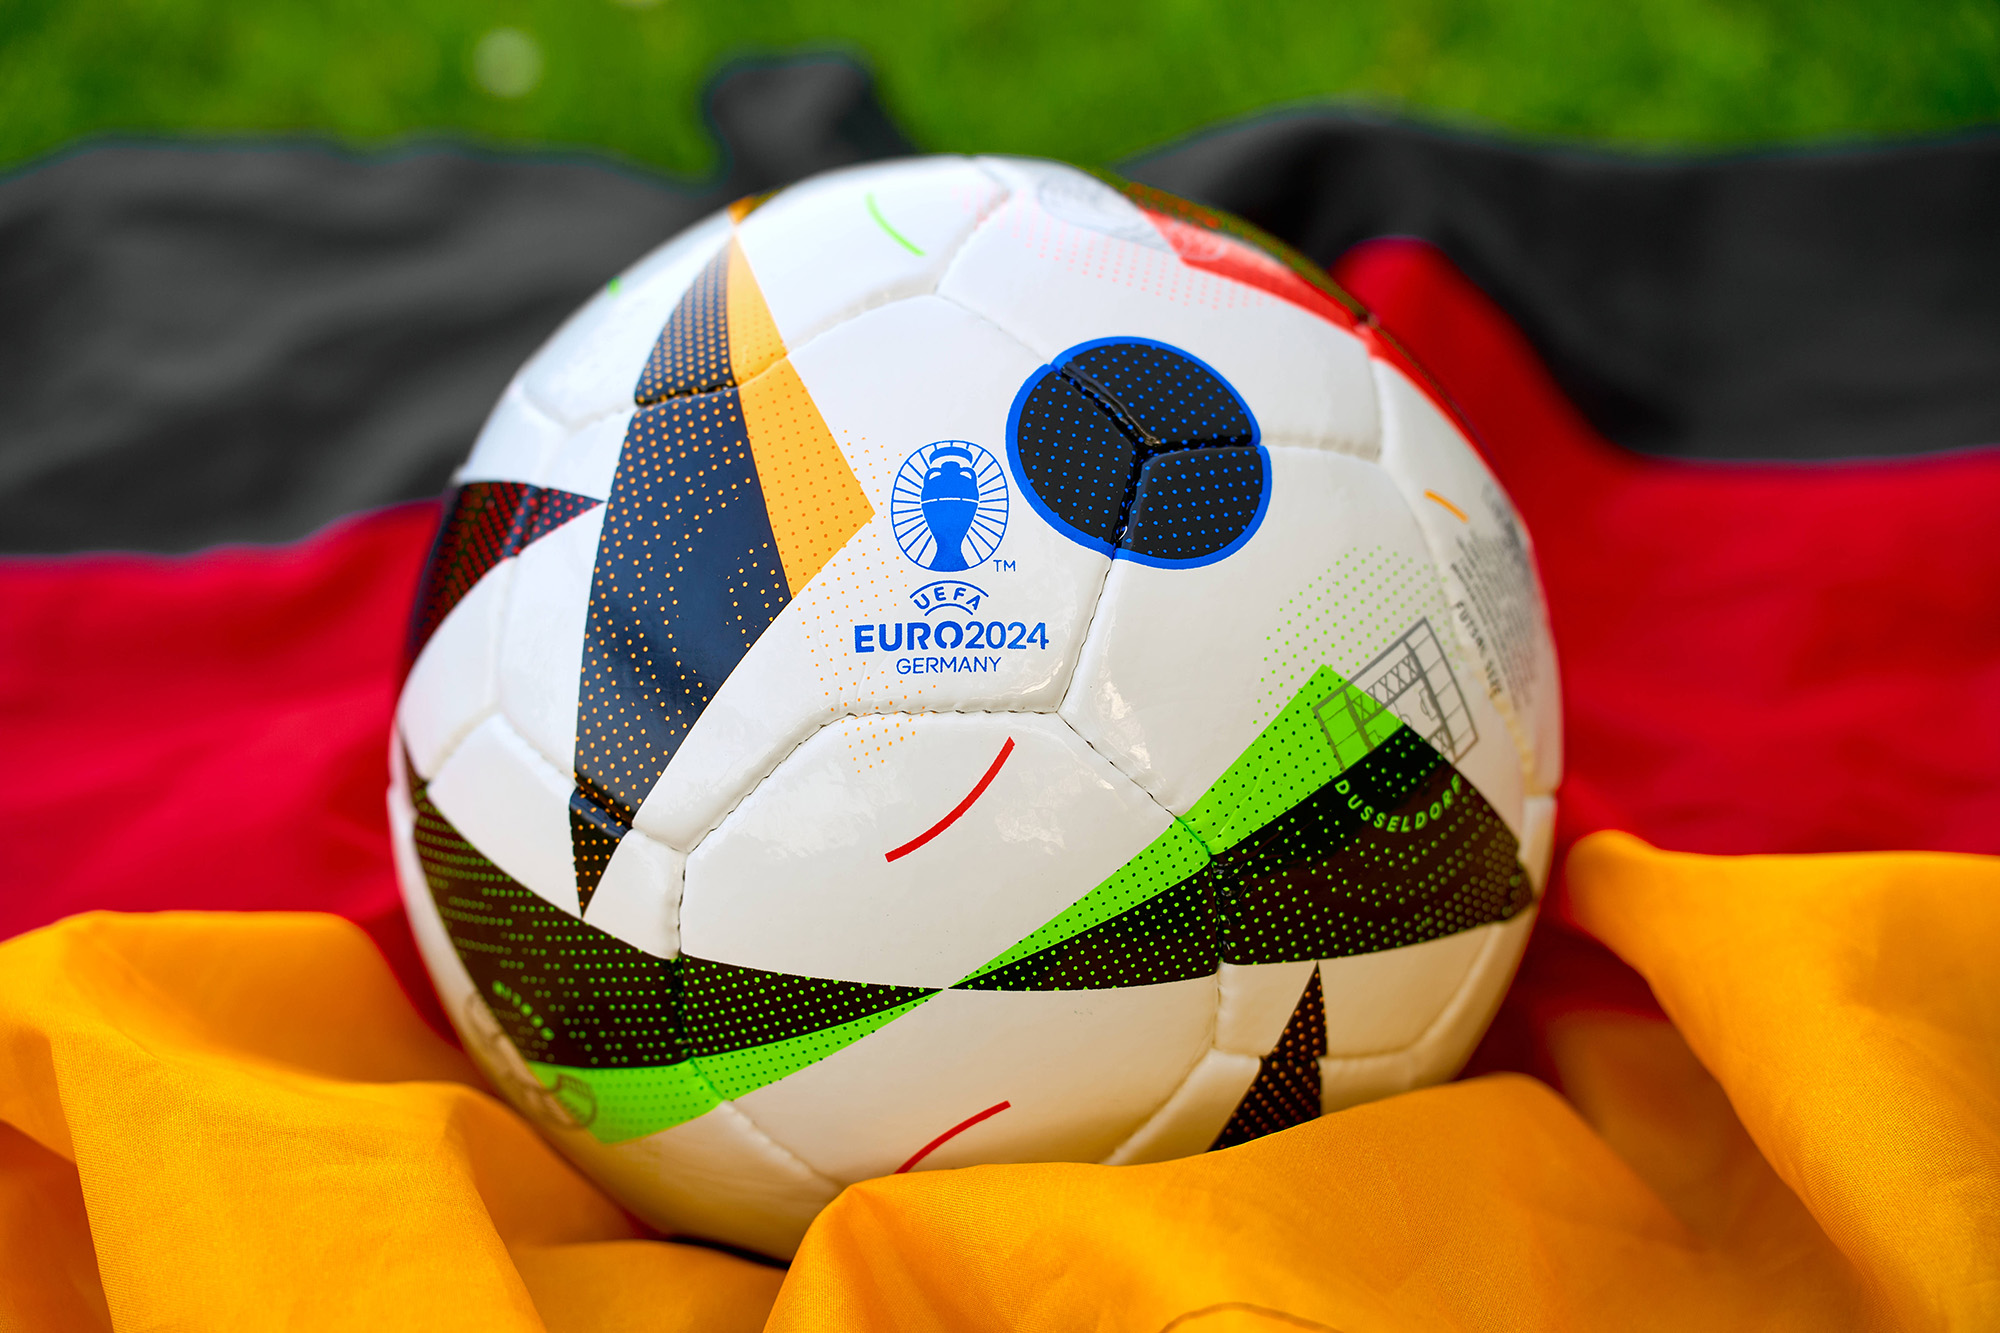 Ein Fußball zur Euro 2024